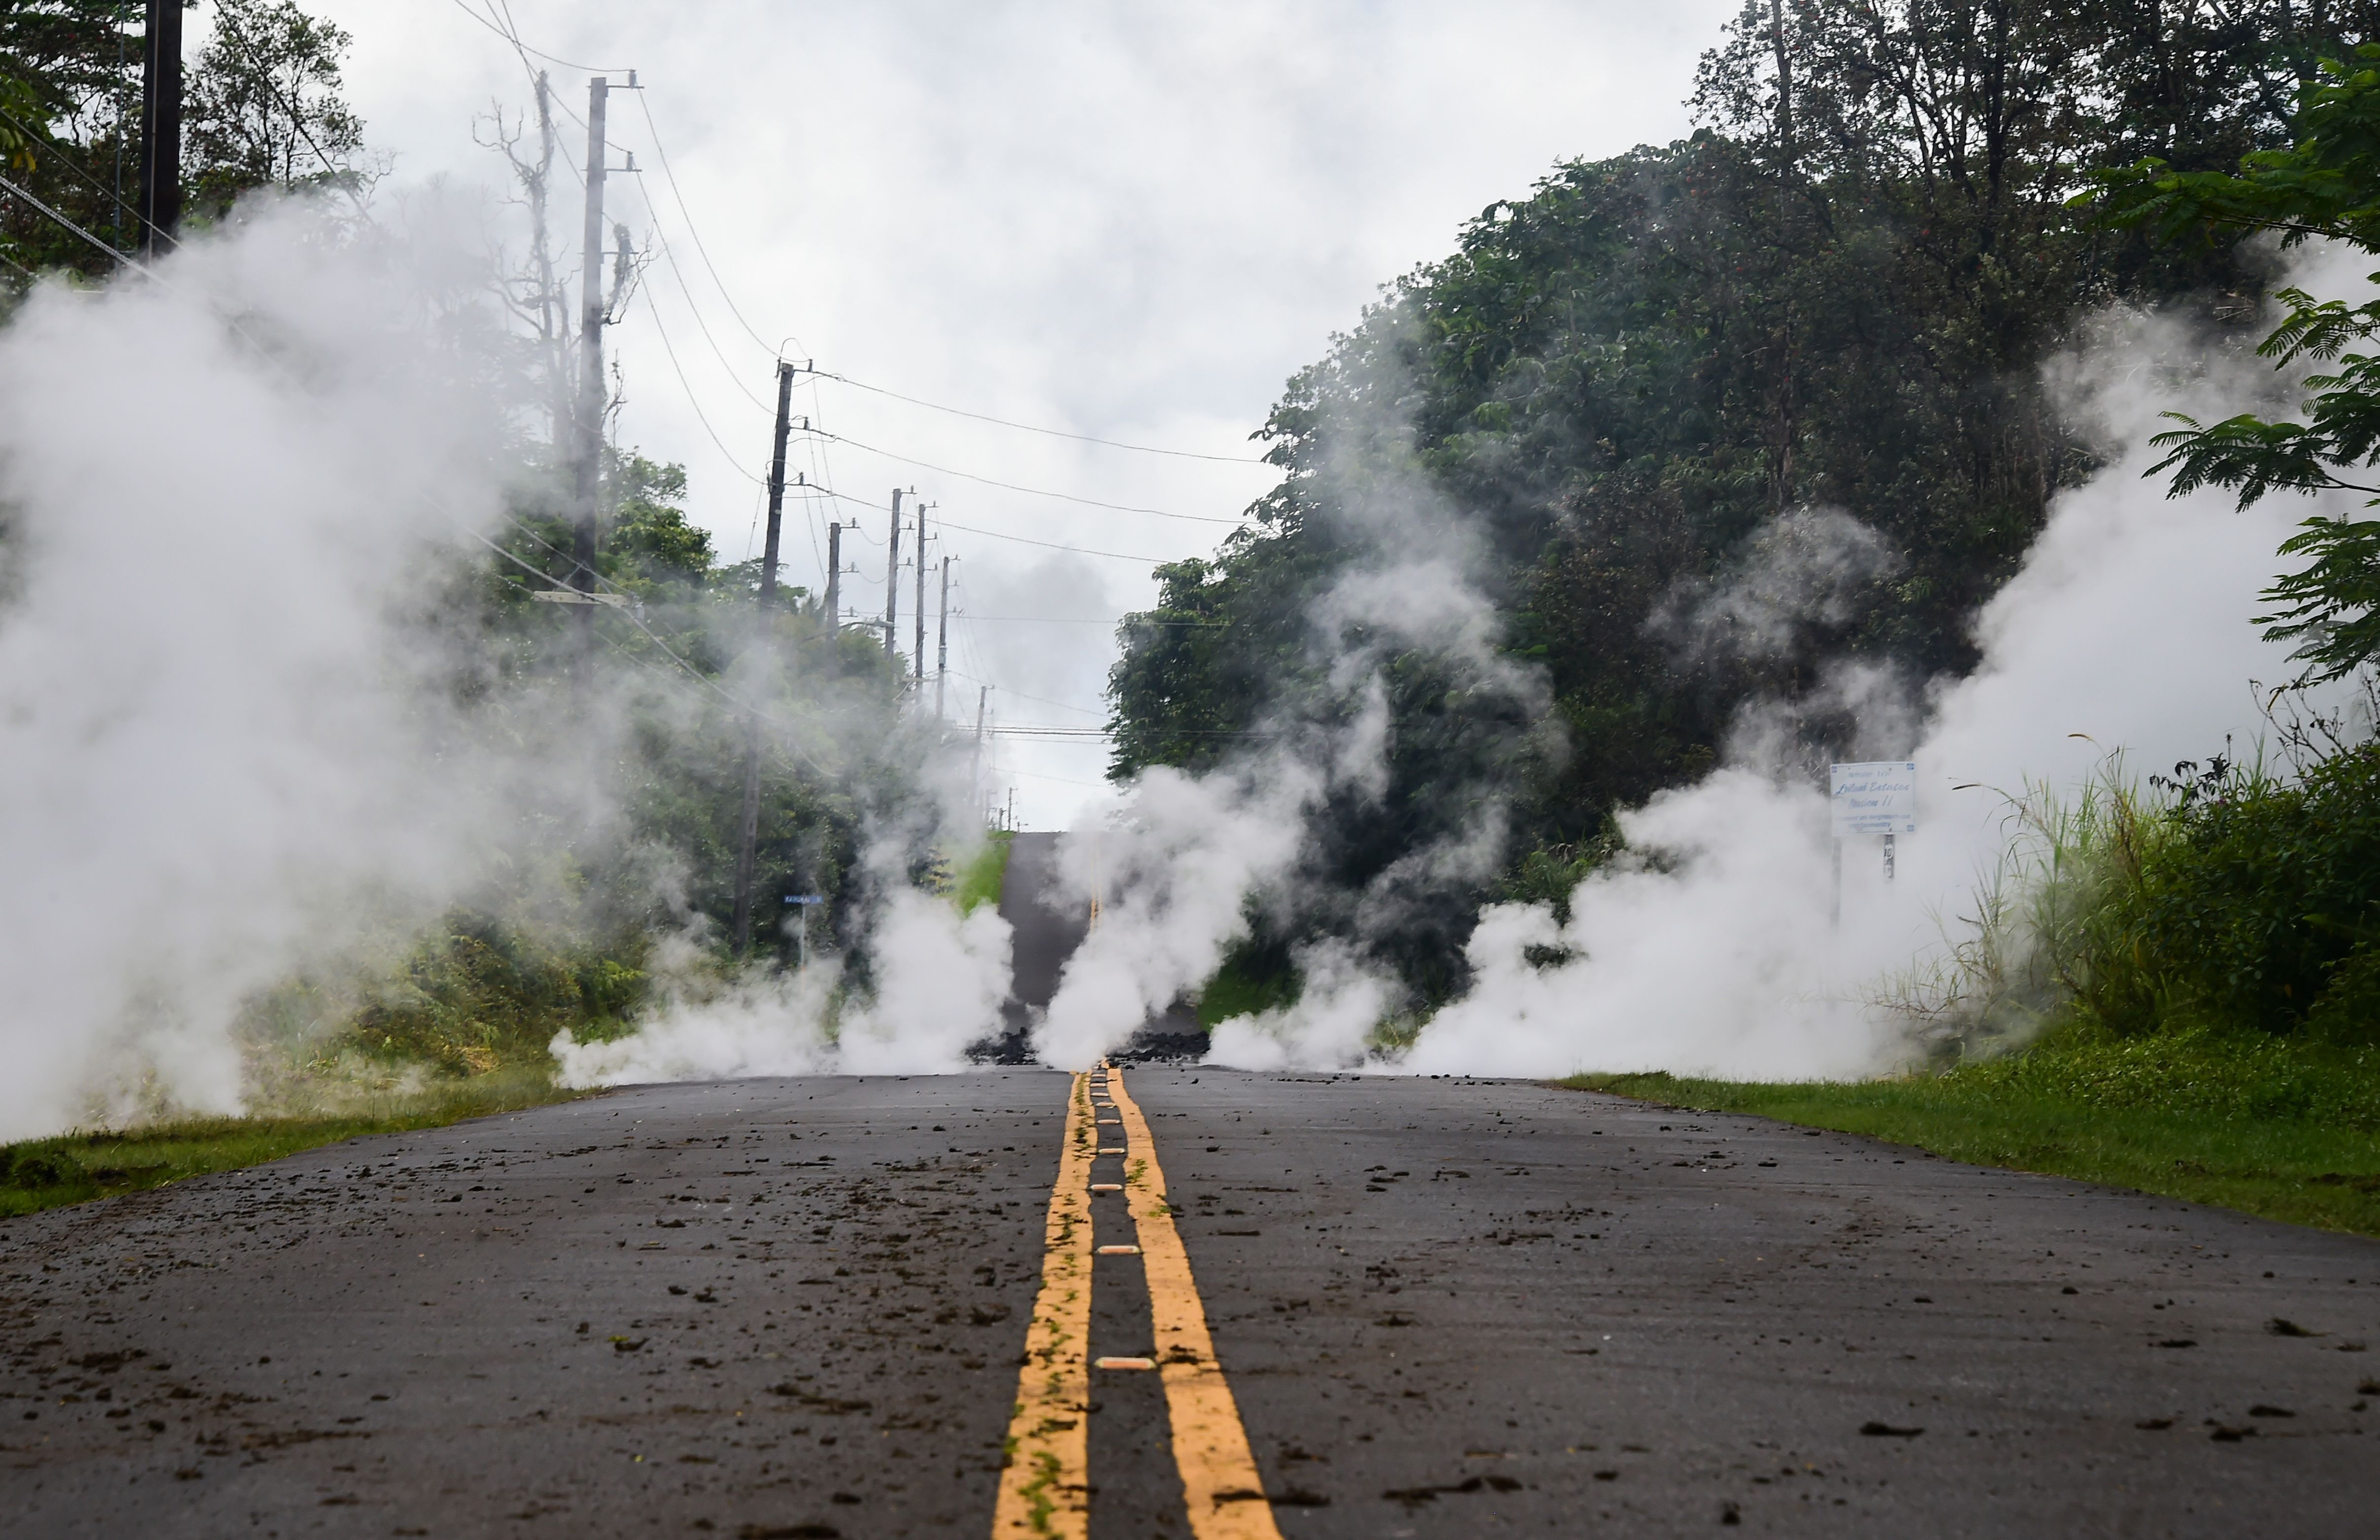 PHOTOS: Hawaii's Kilauea Volcano Erupts